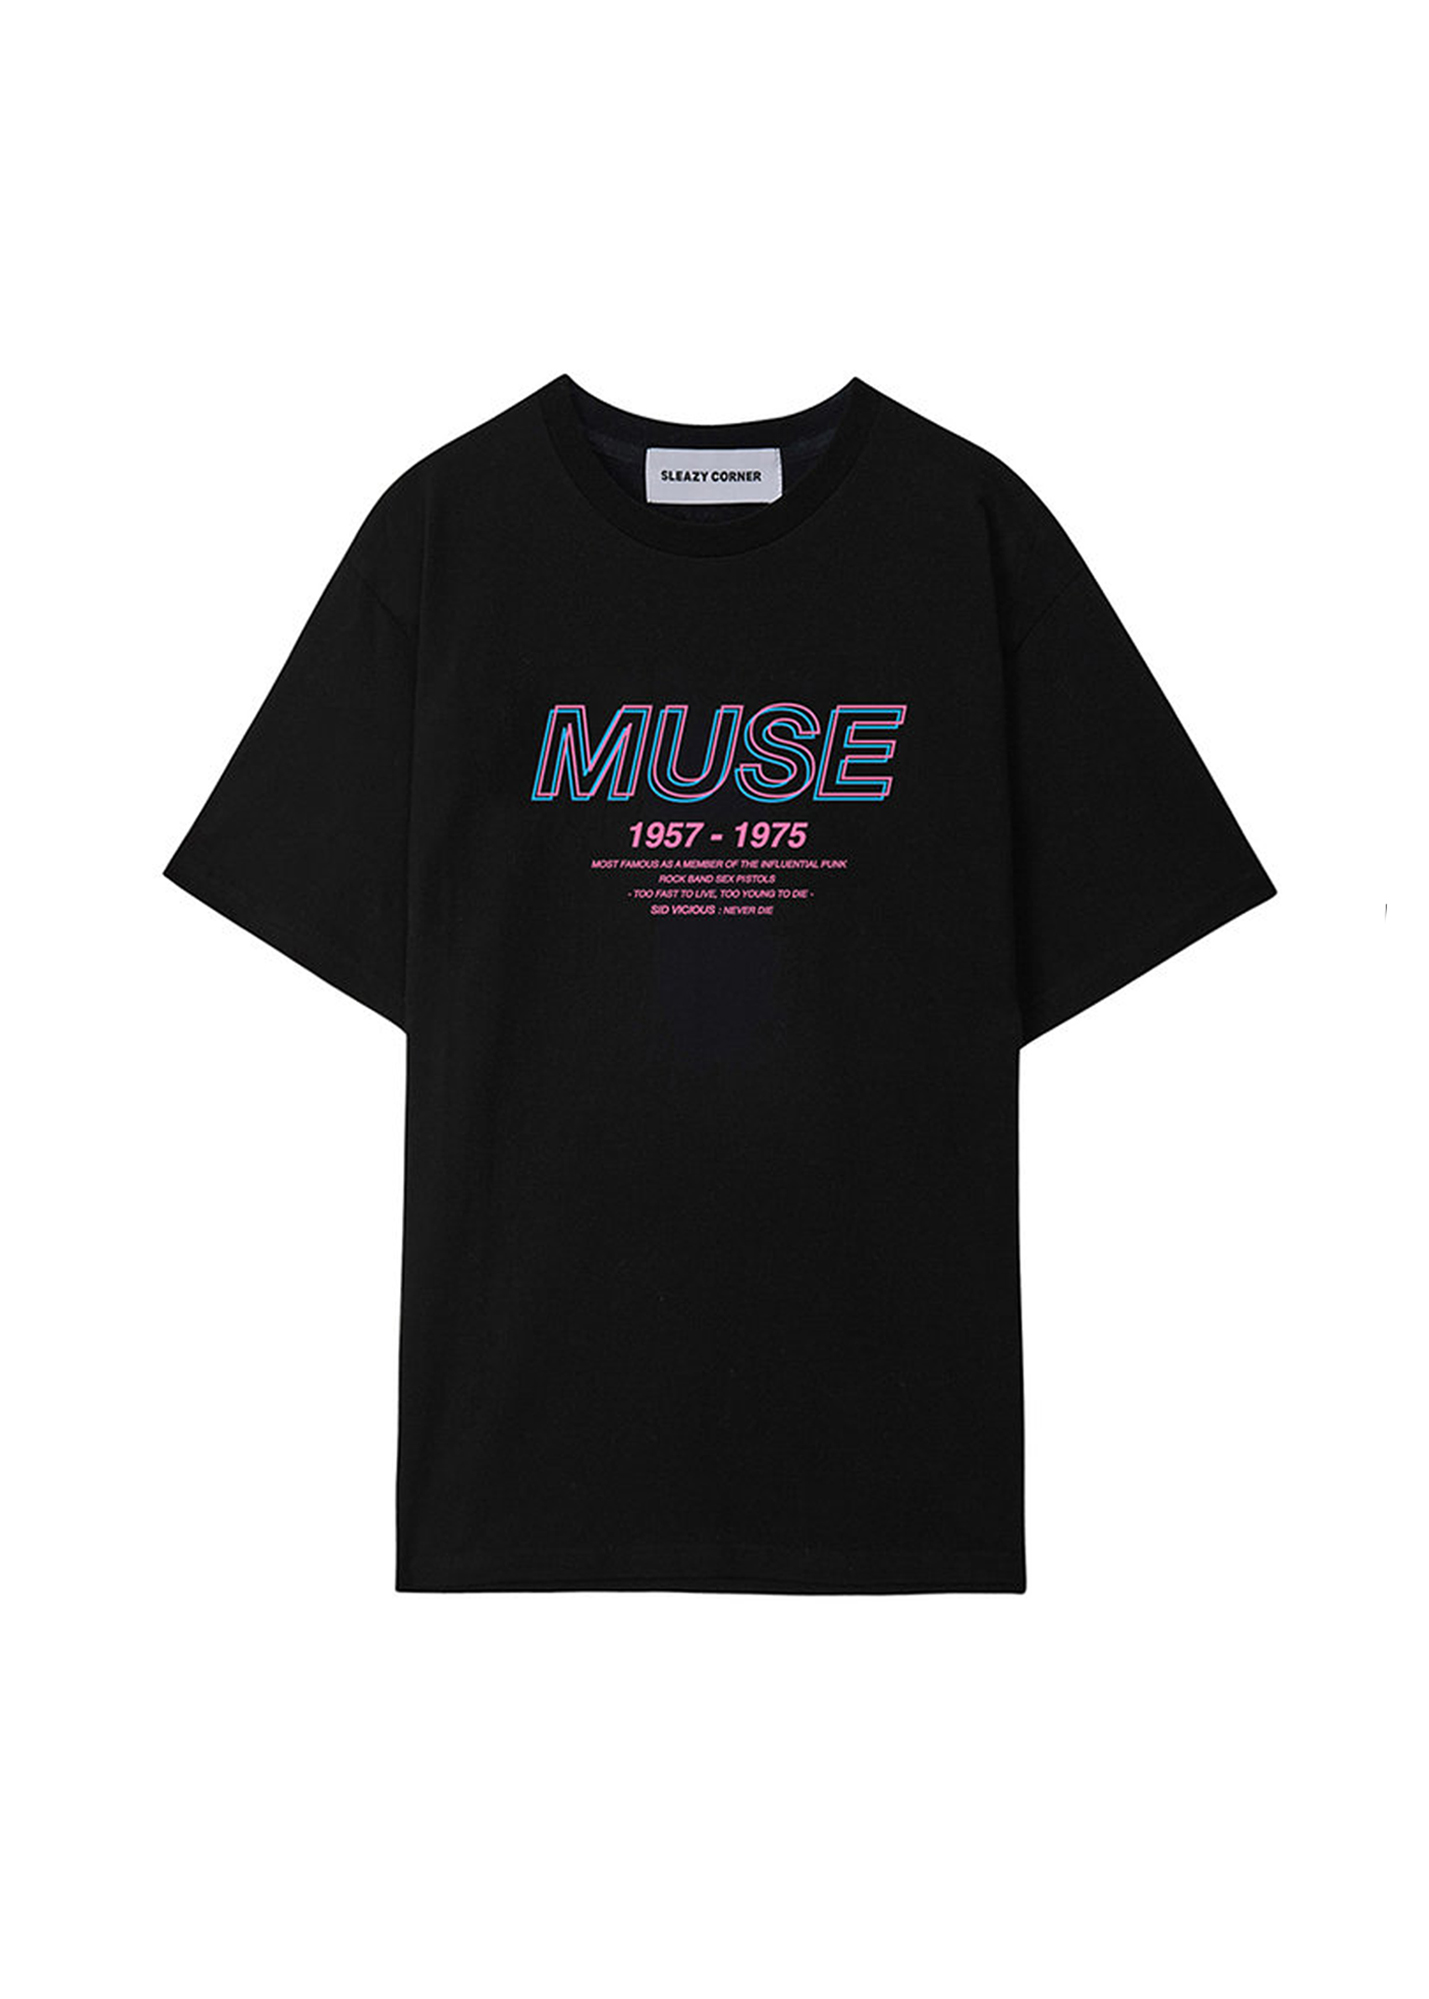 MUSE-HALF T SHIRT(BLACK) [한정판매]